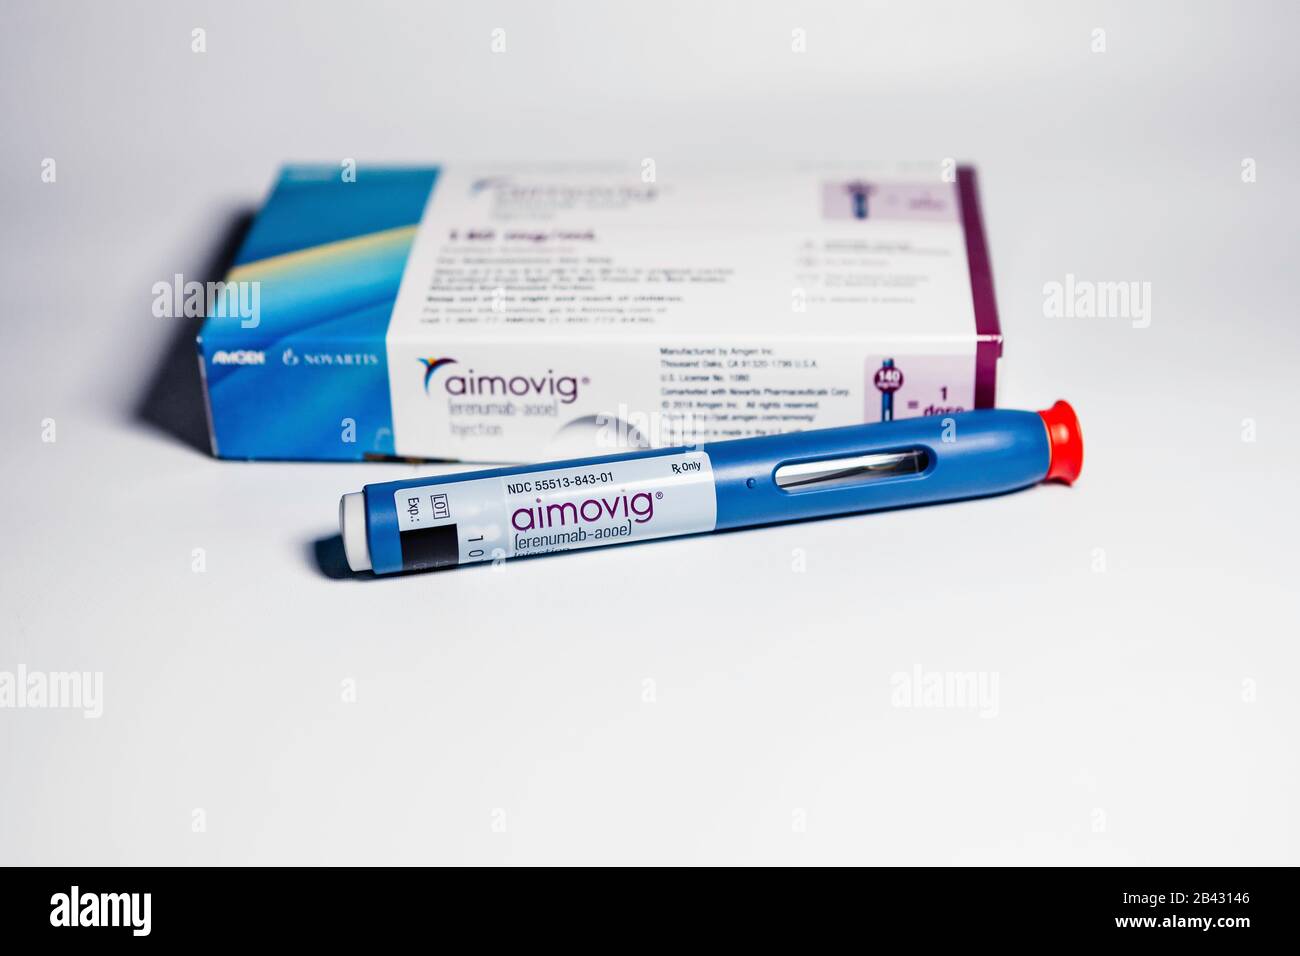 Aimovig (erenumab-aooe) 140 mg auto-injector device, prescription drug for migraine prevention, and box, studio, color, United States Stock Photo